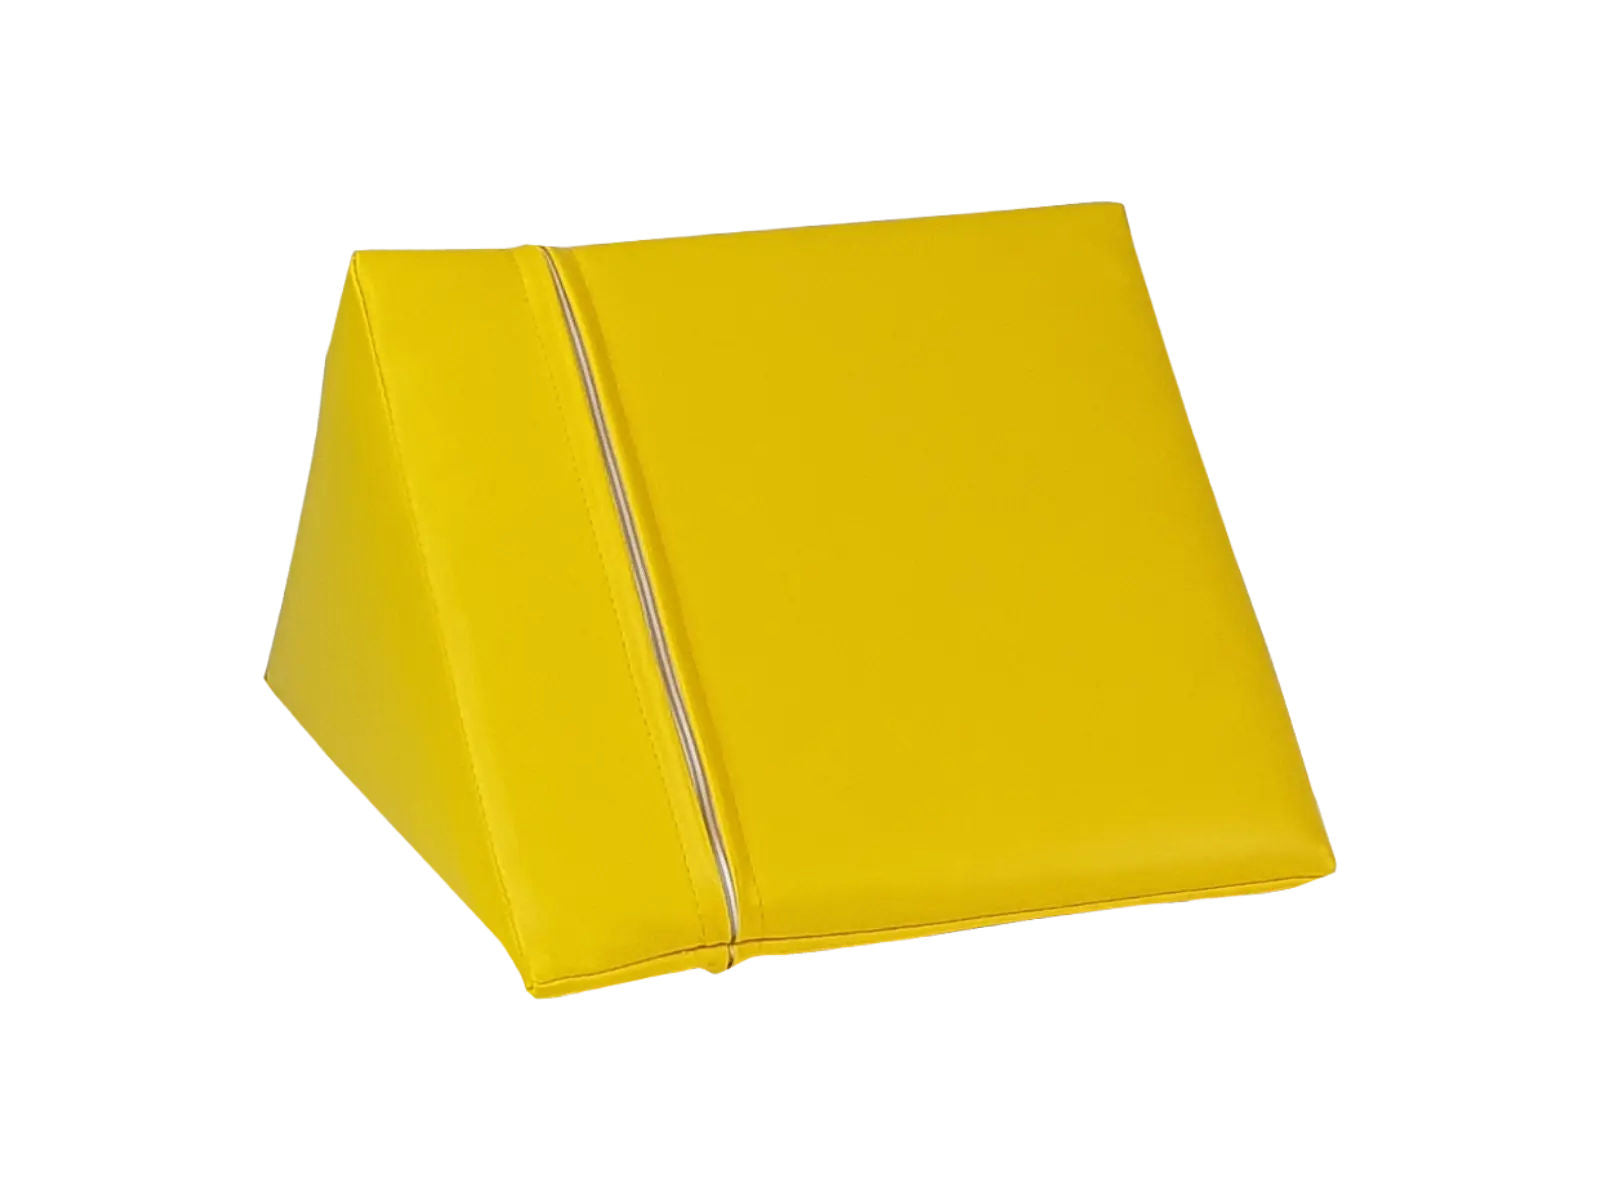 Dreieck kurz 30 x 30 x 30 cm - Physio Form